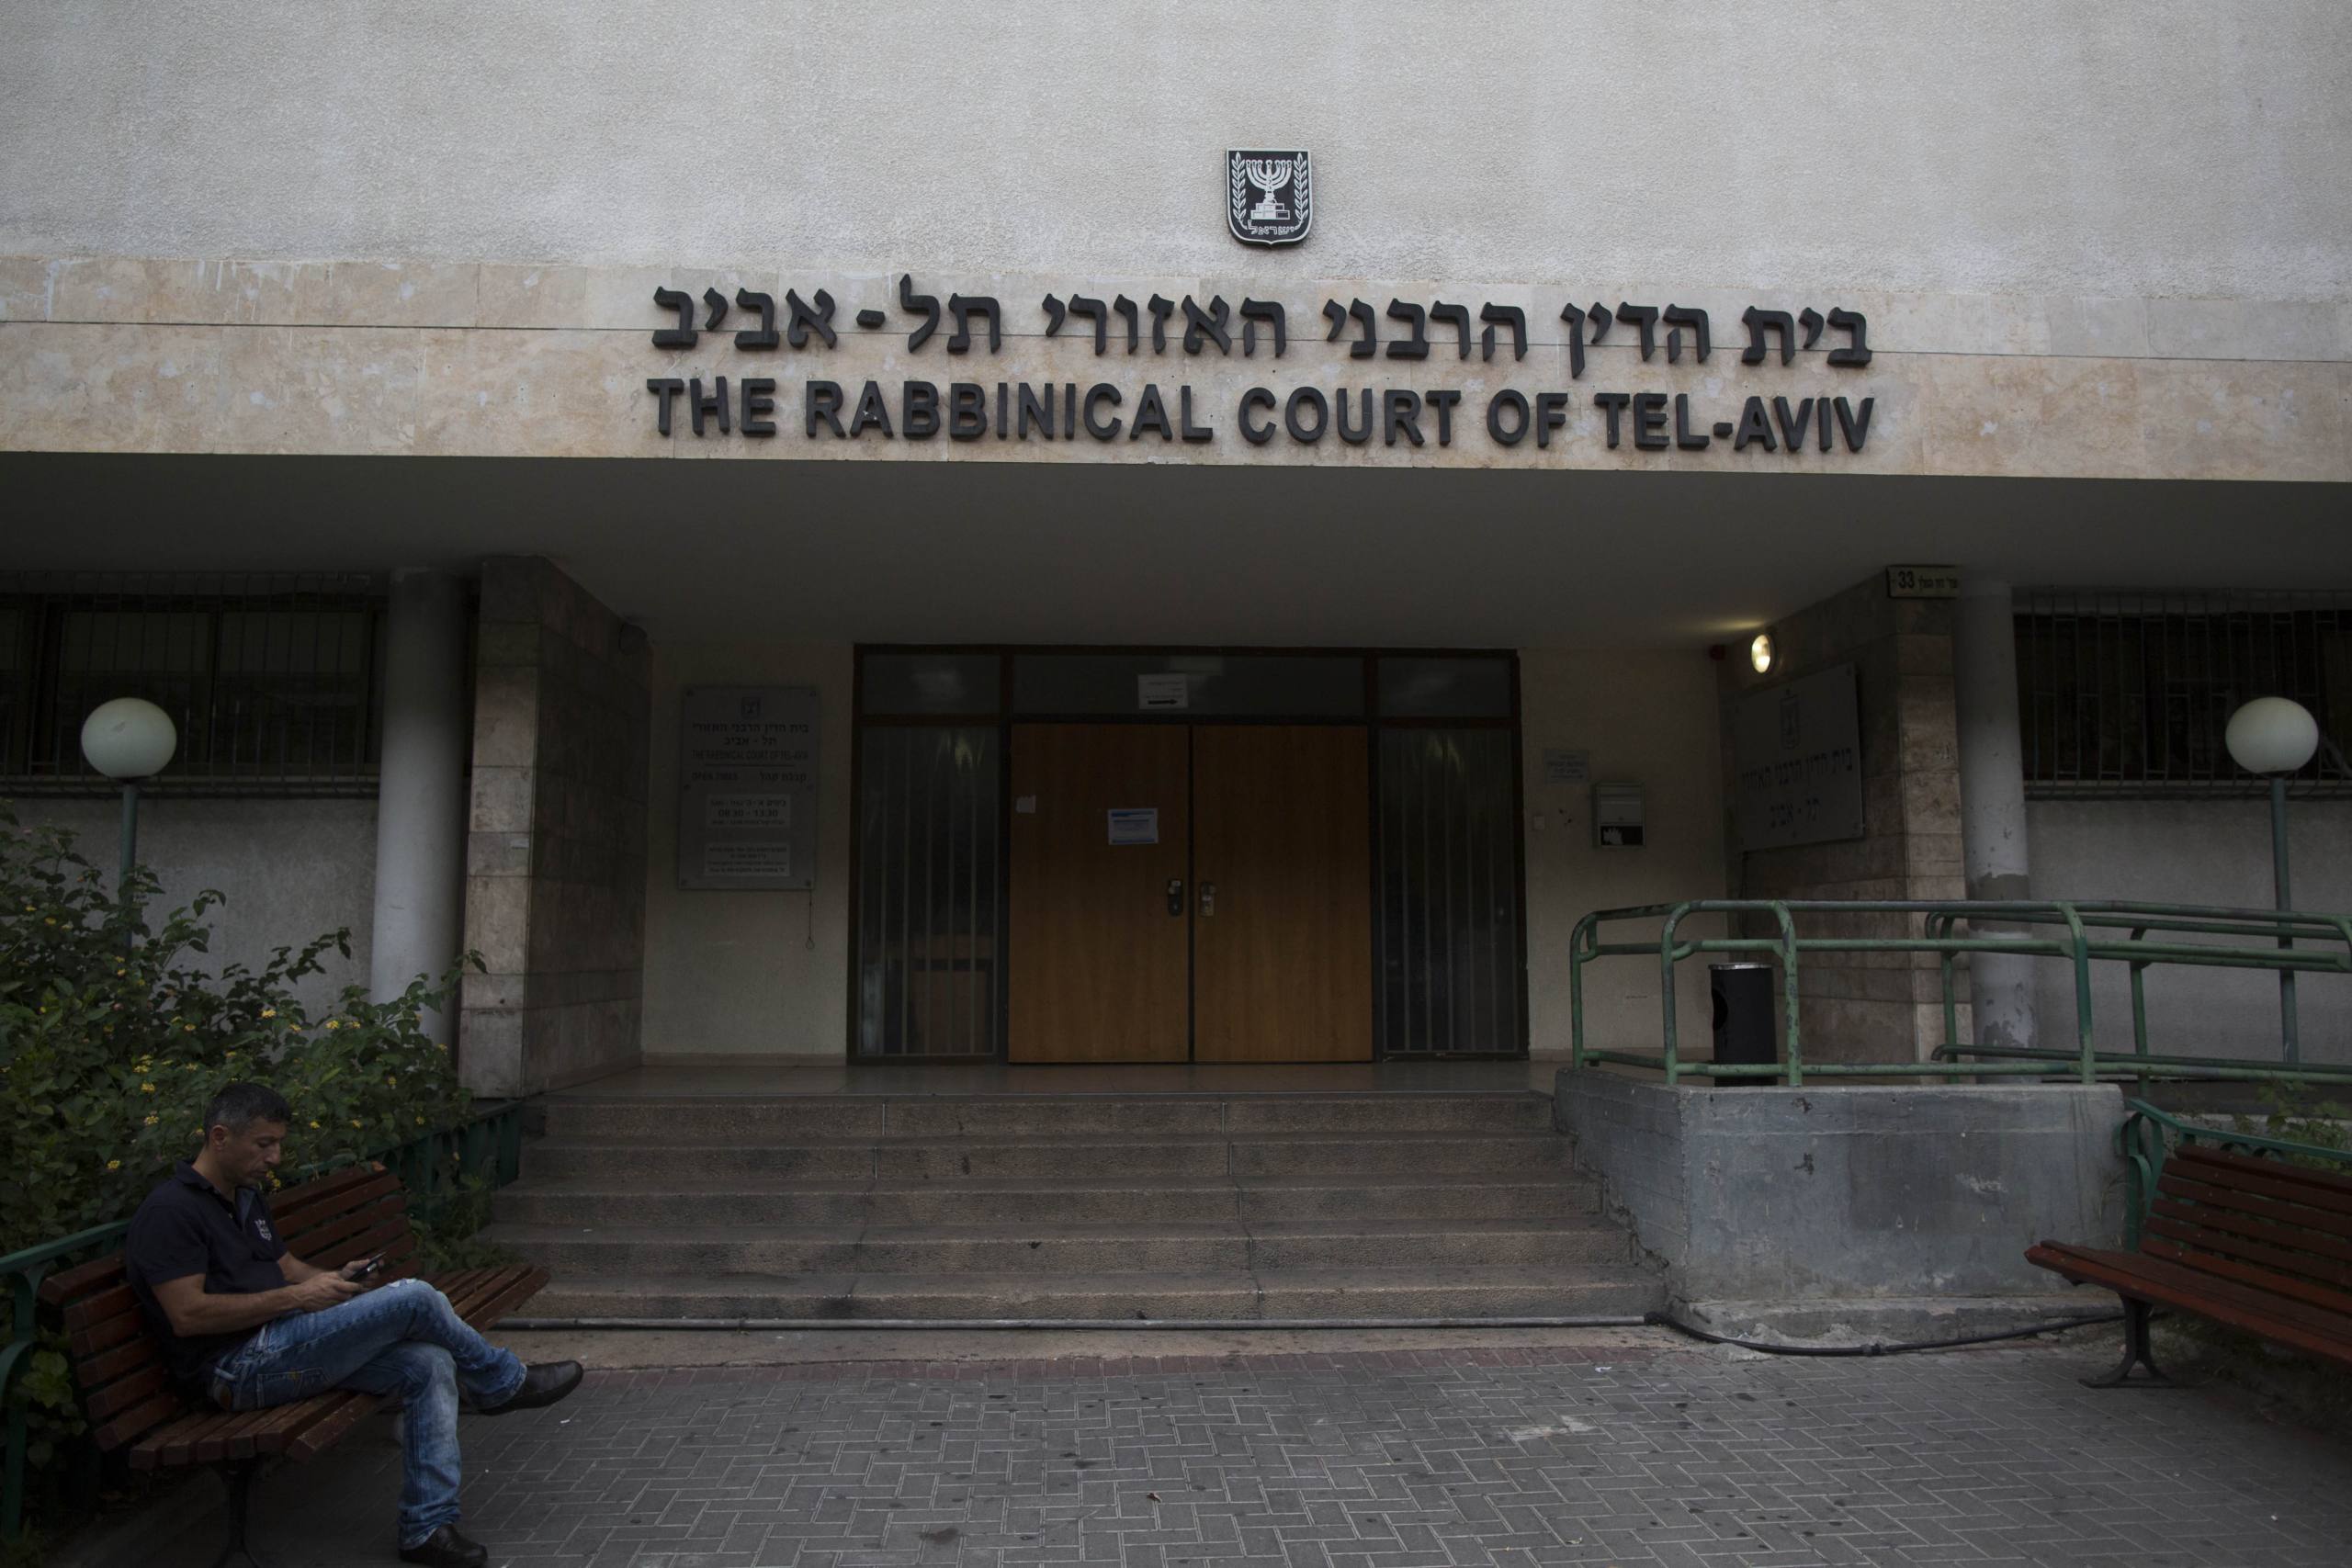 A man sits outside the Rabbinical Court in Tel Aviv on November 27, 2013. Photo by Yonatan Sindel/Flash90 *** Local Caption *** áúé äãéï äøáðééí
áéú ãéï øáðé
úì àáéá